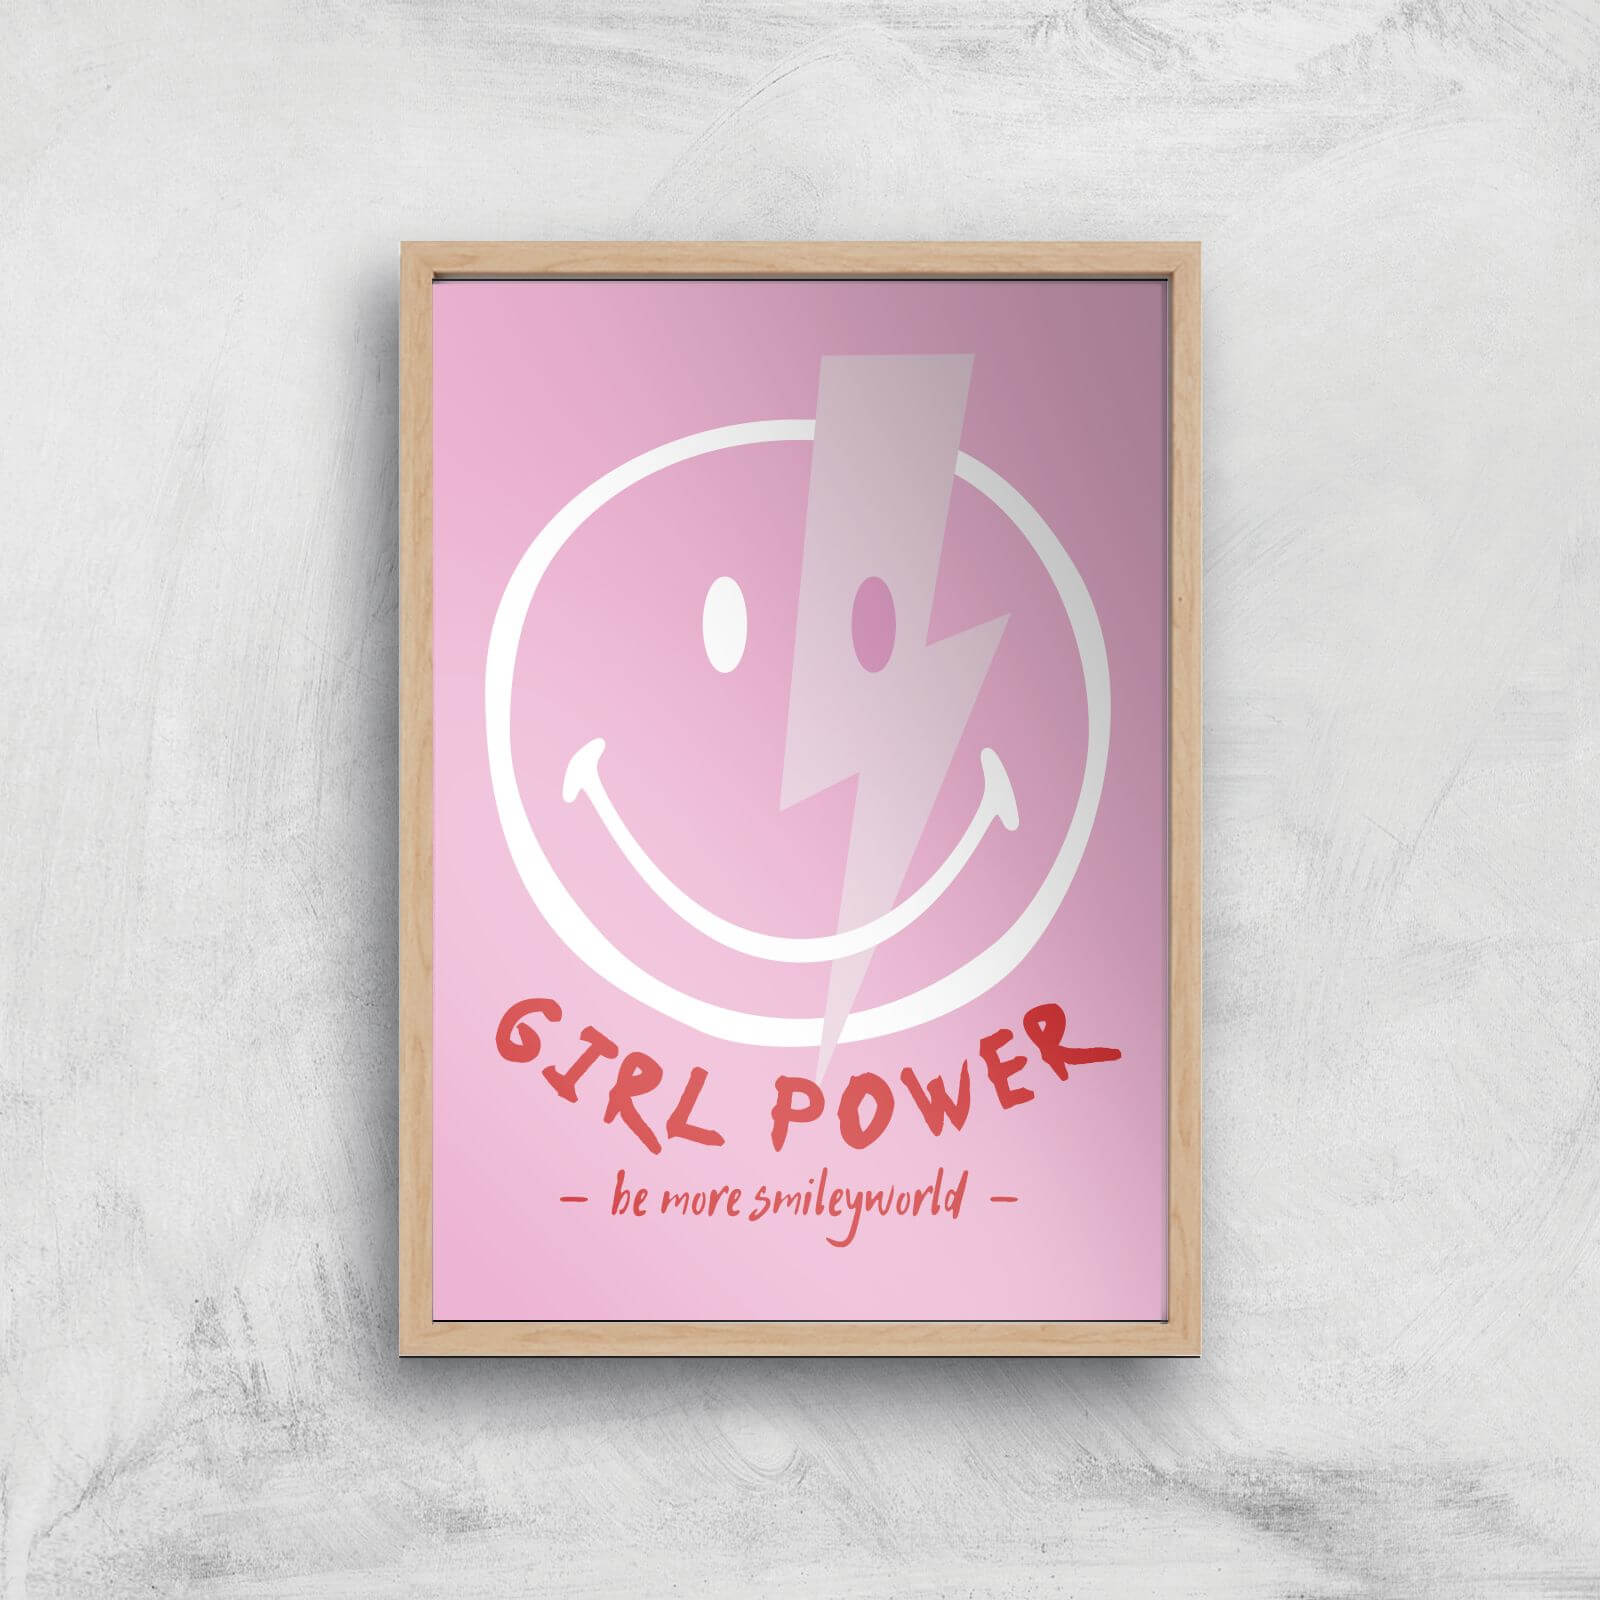 Girl Power Giclée Art Print - A3 - Wooden Frame